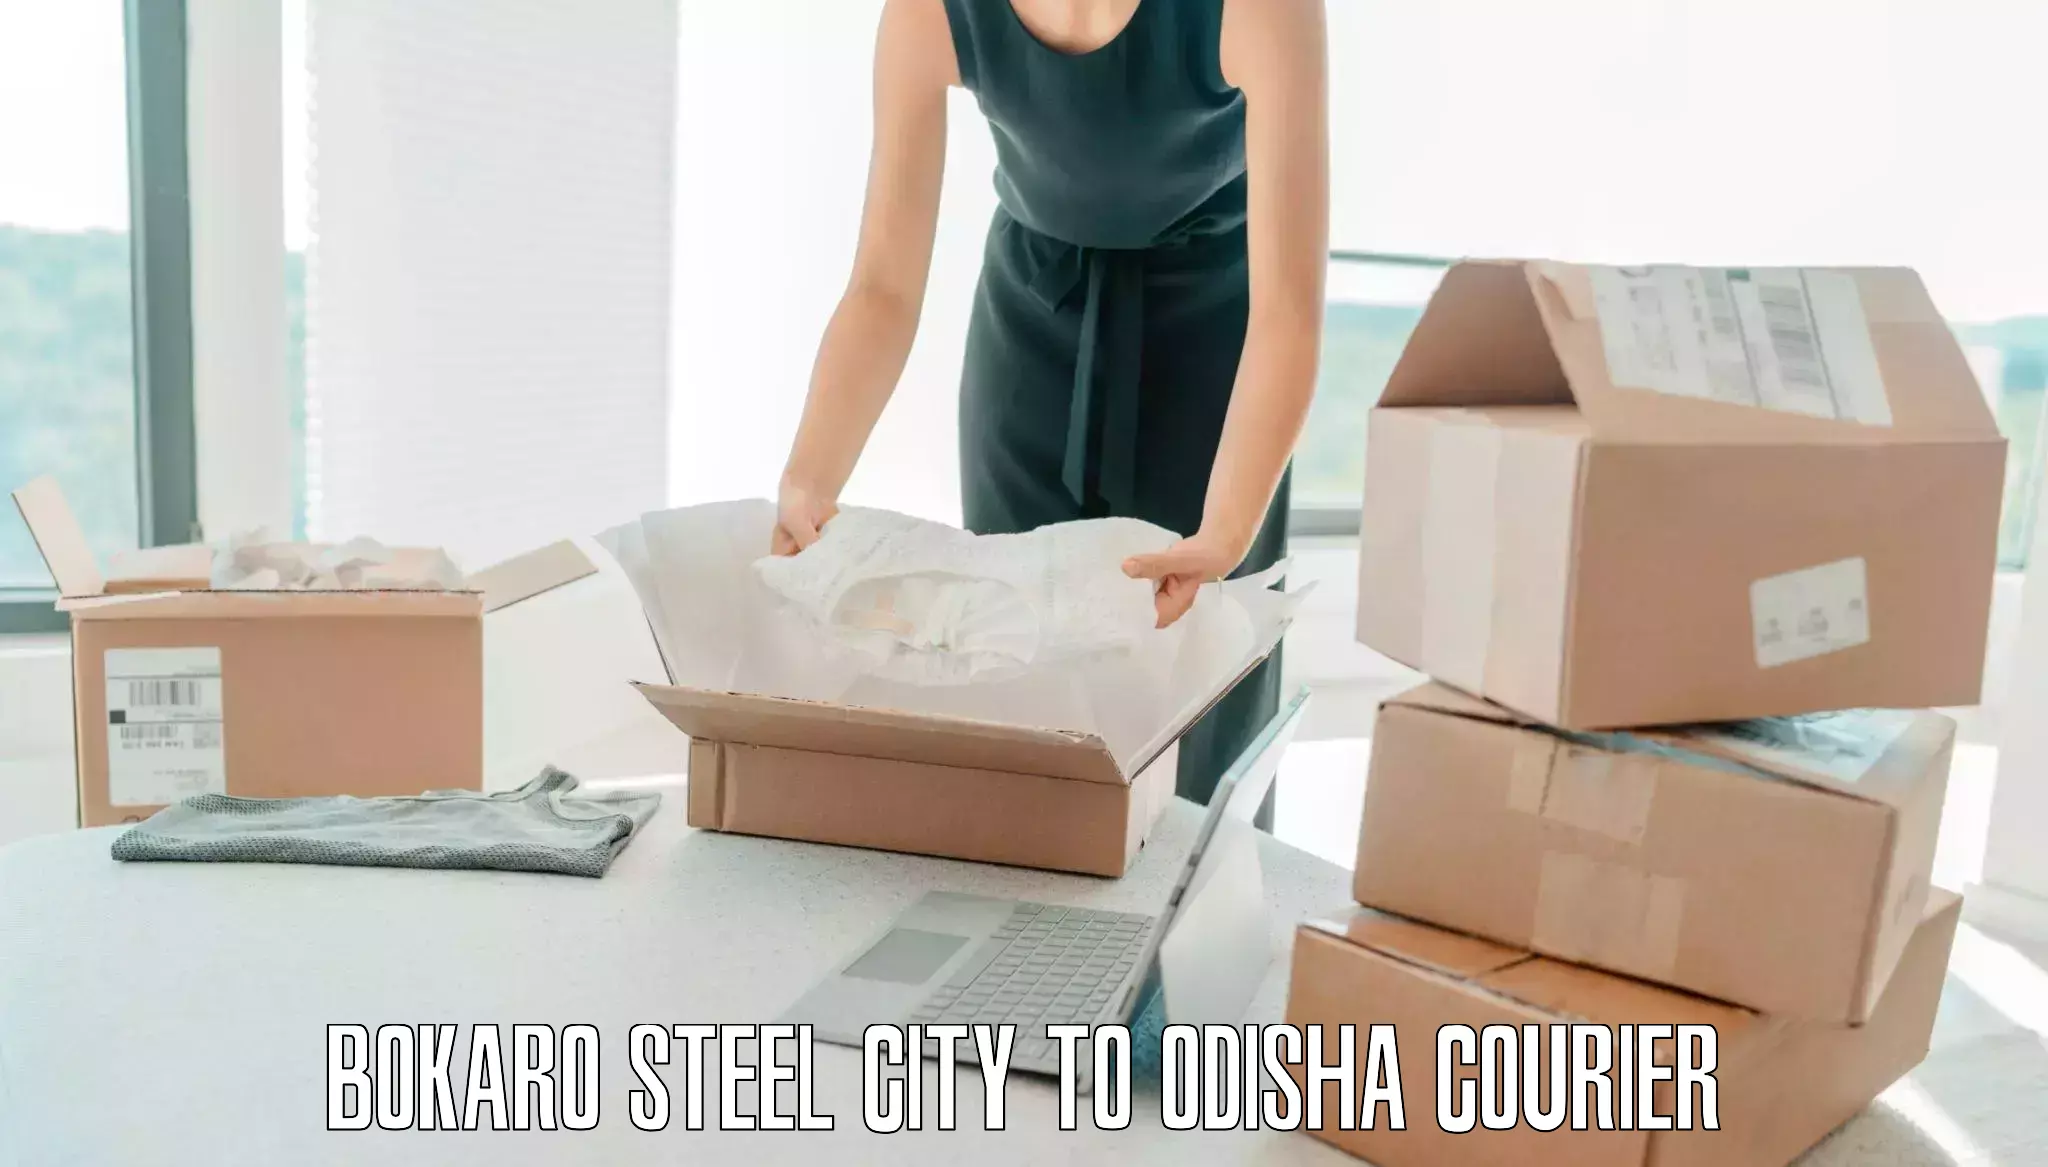 High-quality baggage shipment Bokaro Steel City to Kesinga